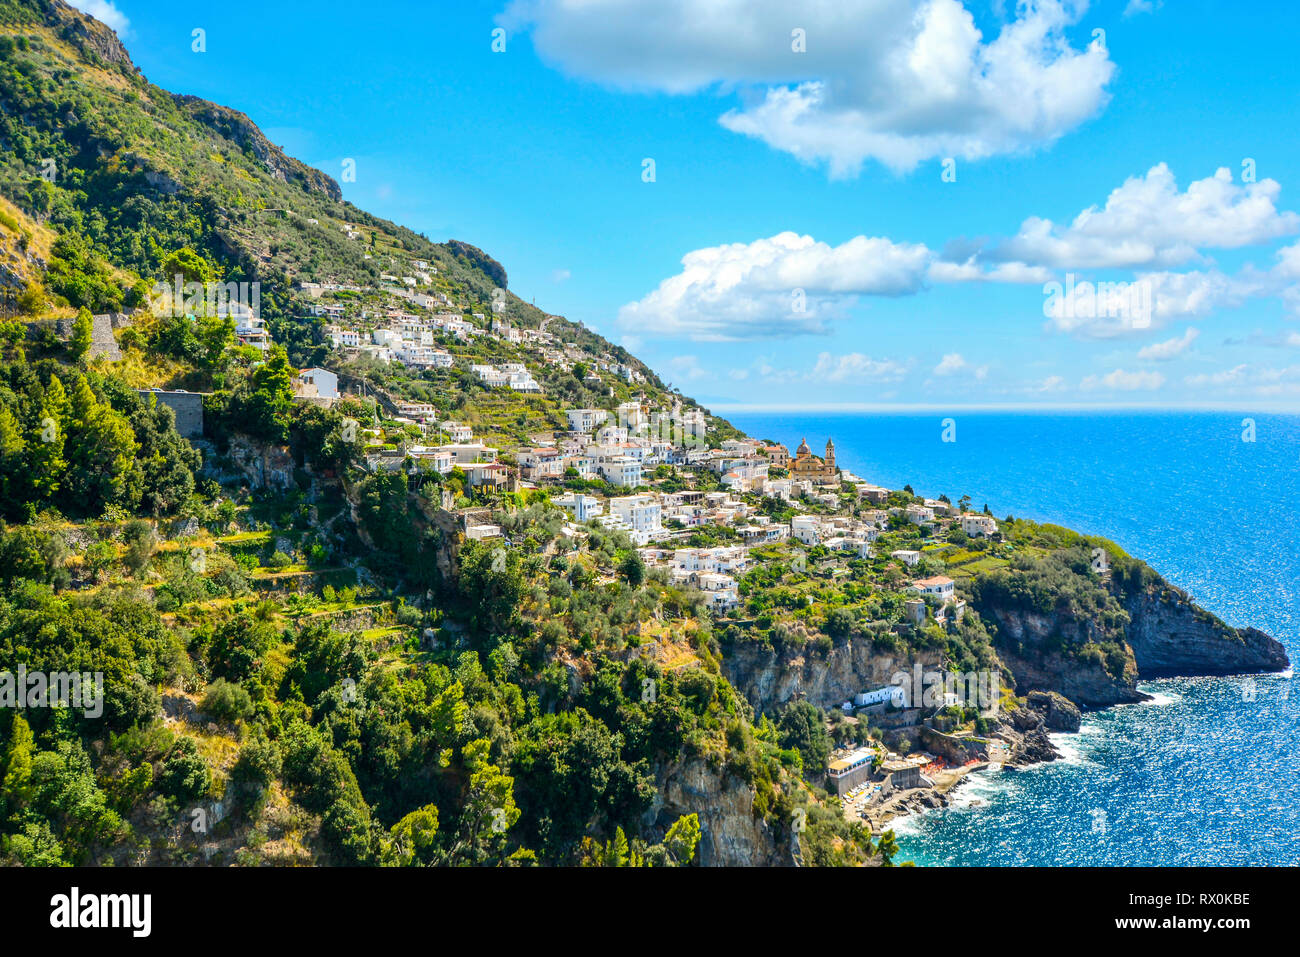 Ein Blick auf einem Hügel Stadt Praiano, Italien von einer landschaftlich schönen Fahrt entlang der Amalfiküste auf dem italienischen Mittelmeer Stockfoto